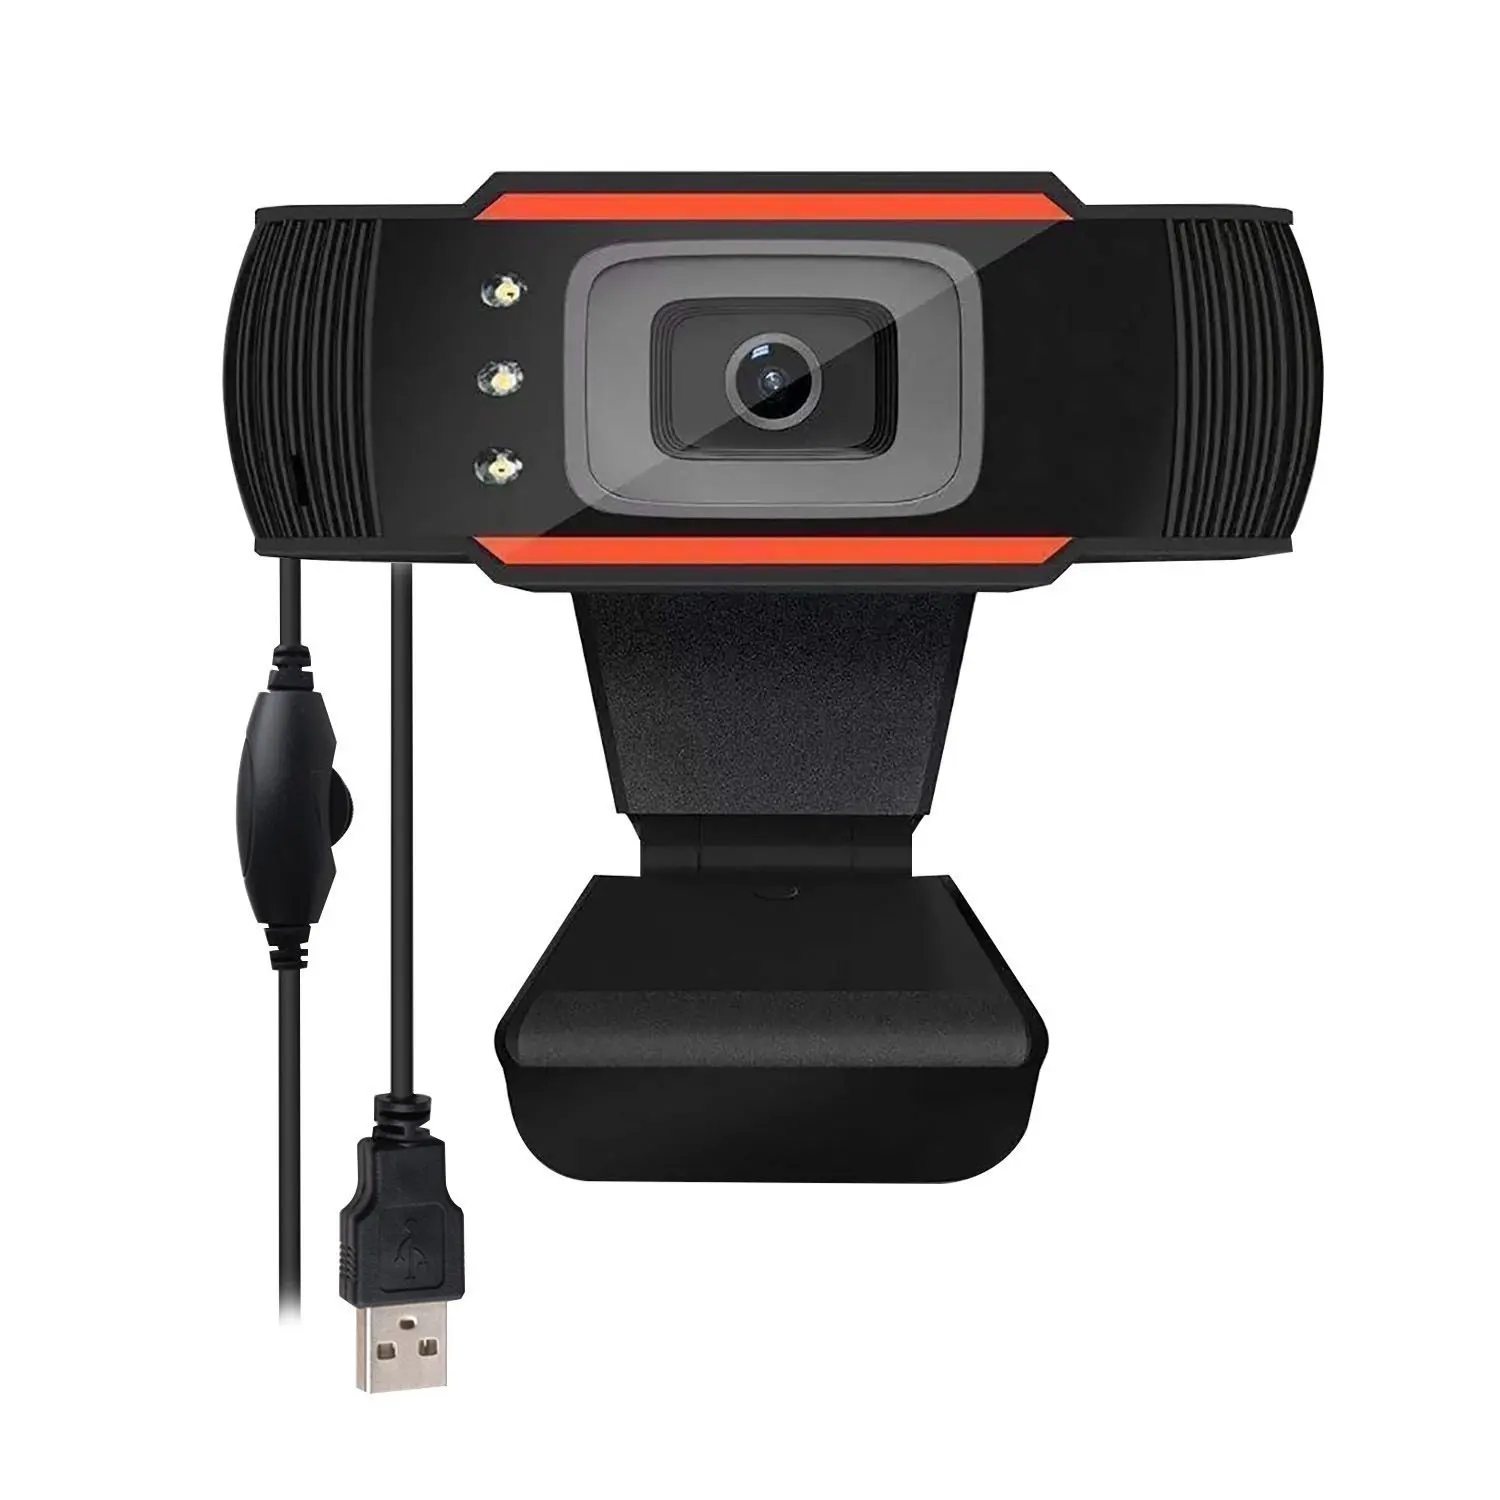 वेब कैमरा कैम 480p 720p 1080p पूर्ण hd 1920 लाइव स्ट्रीमिंग वीडियो सम्मेलन कैमरों के लिए पीसी लैपटॉप वीडियो कैमरों वेब वेब कैमरा